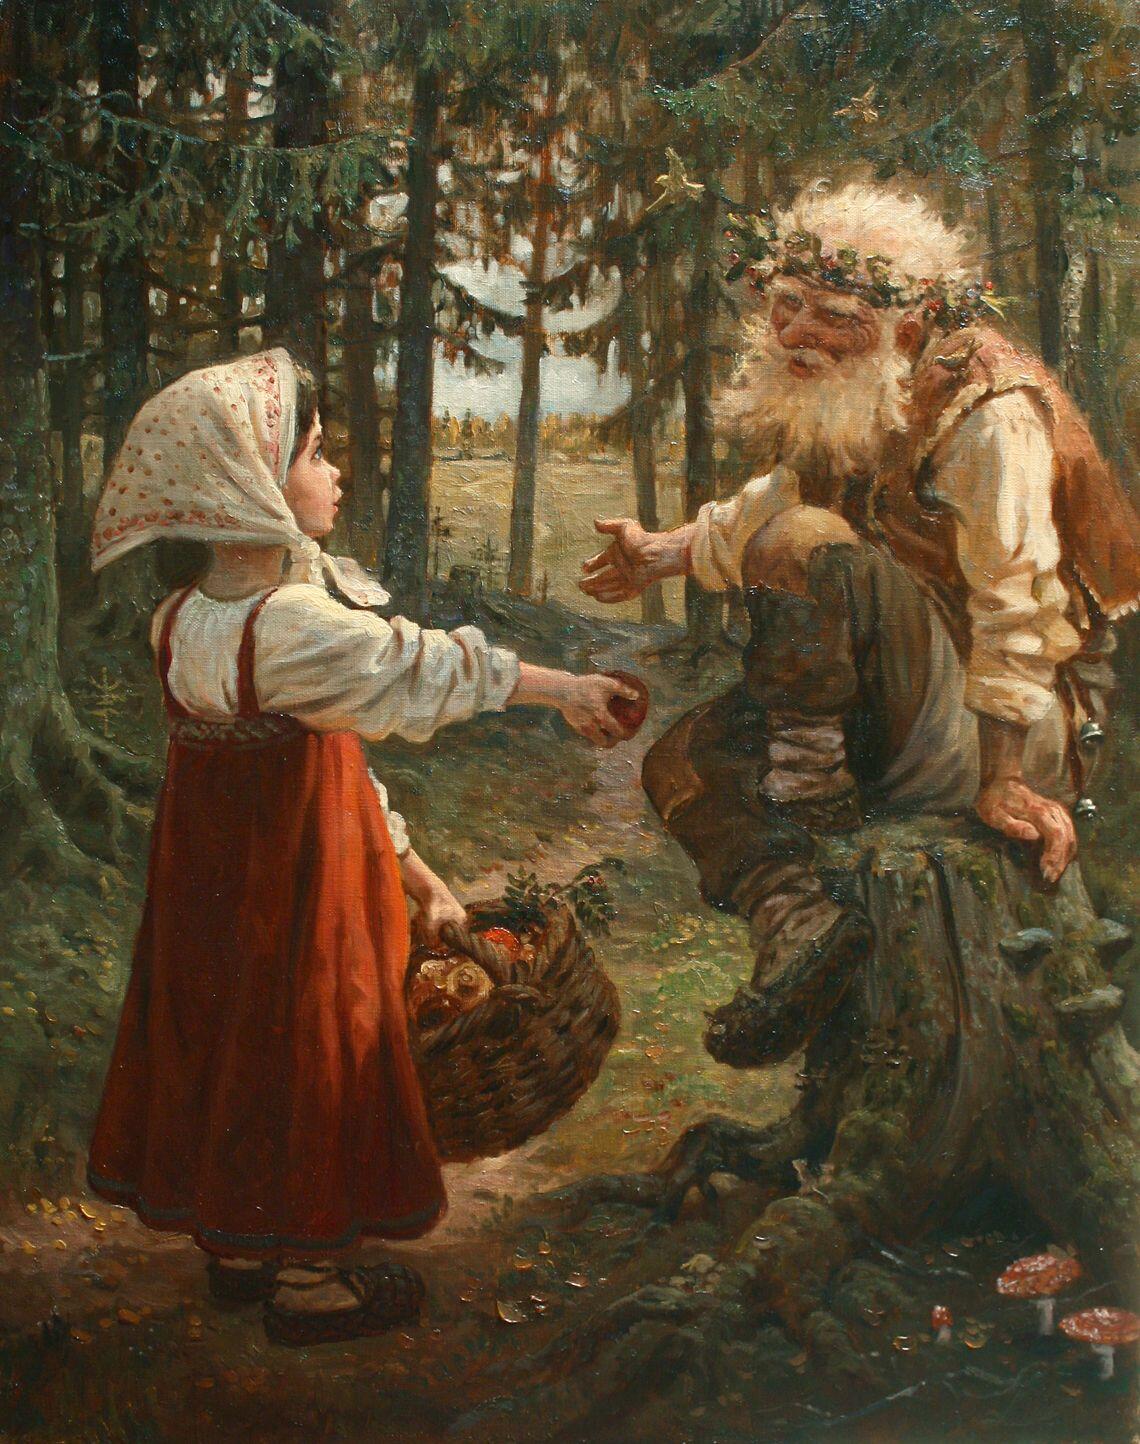 Сказки в живописи русских художников